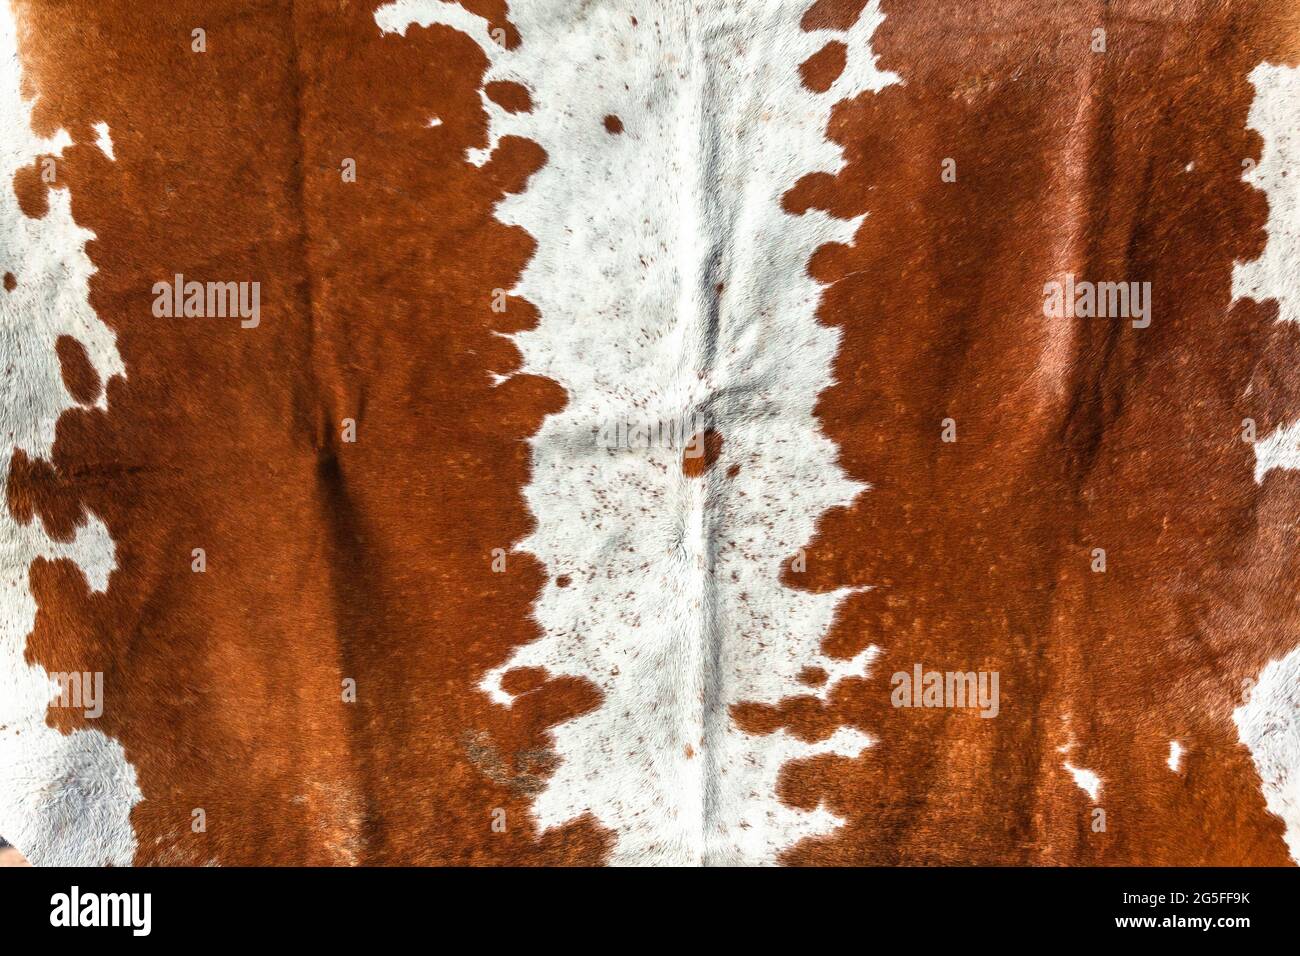 Bestiame animale pelliccia pelle pelli closeup foto immagine astratta sfondo dettaglio di pulito trattato insieme per rendere pelliccia tappeto arredamento stile di vita. Foto Stock